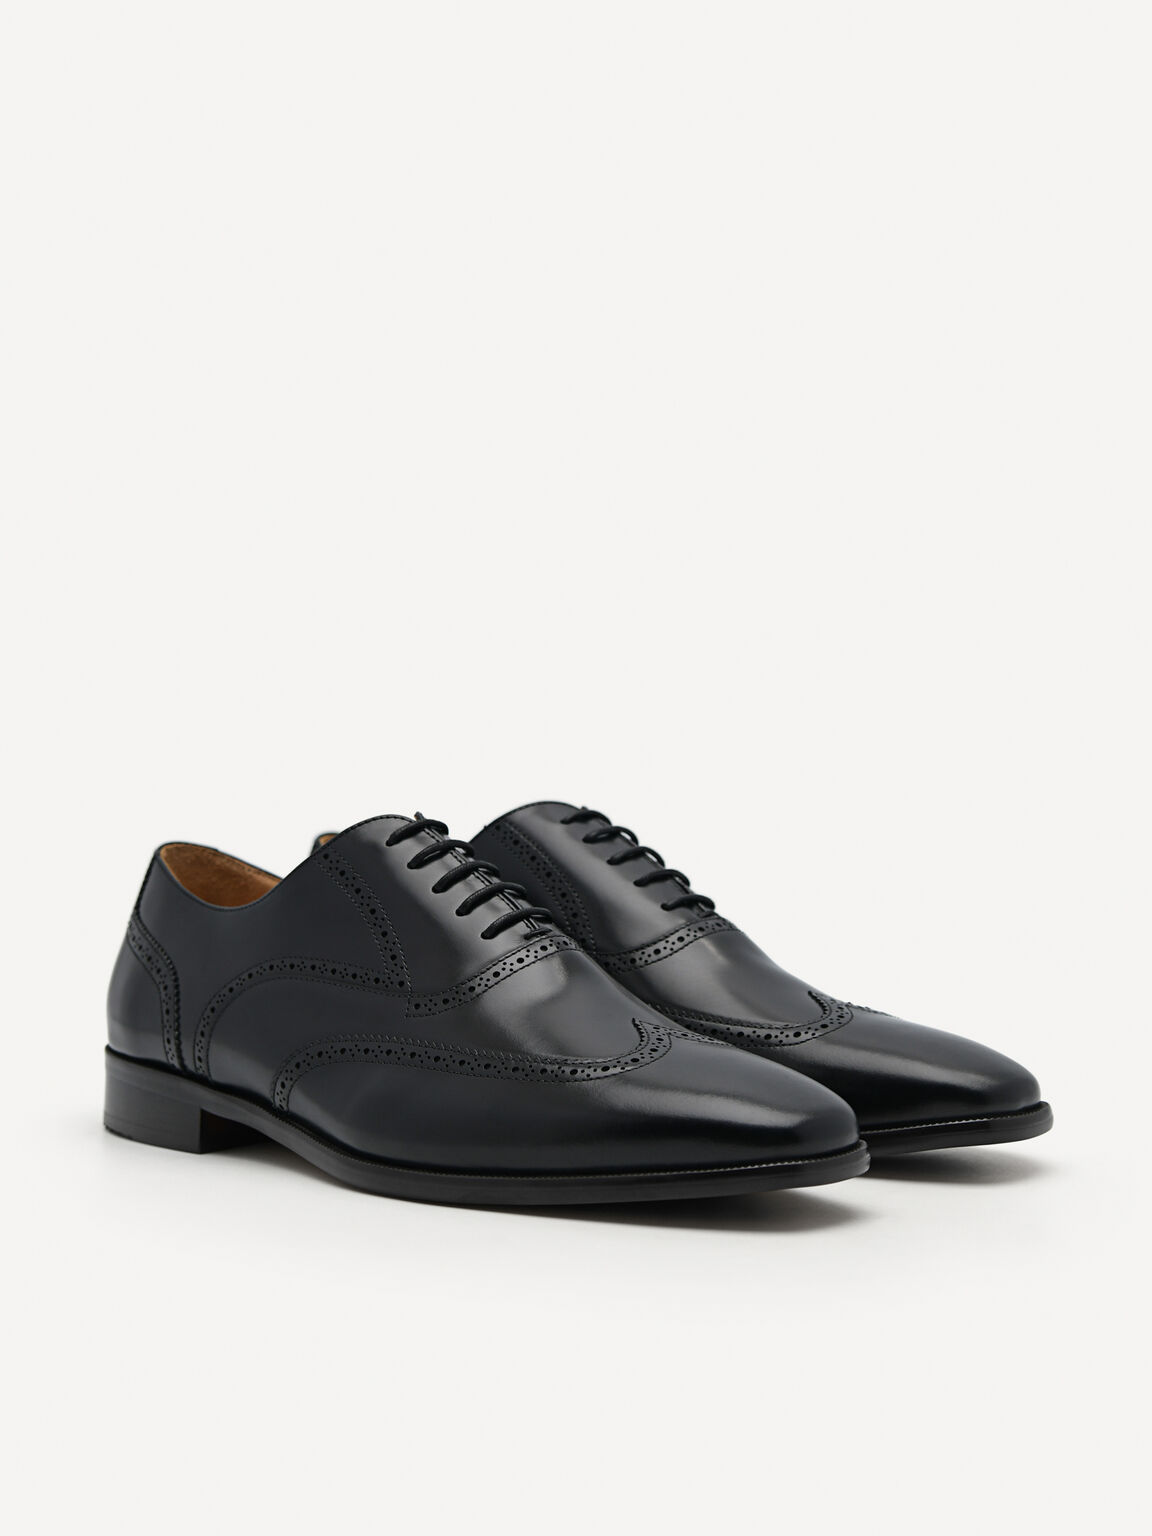 Black Baker Leather Oxford Shoes, Black